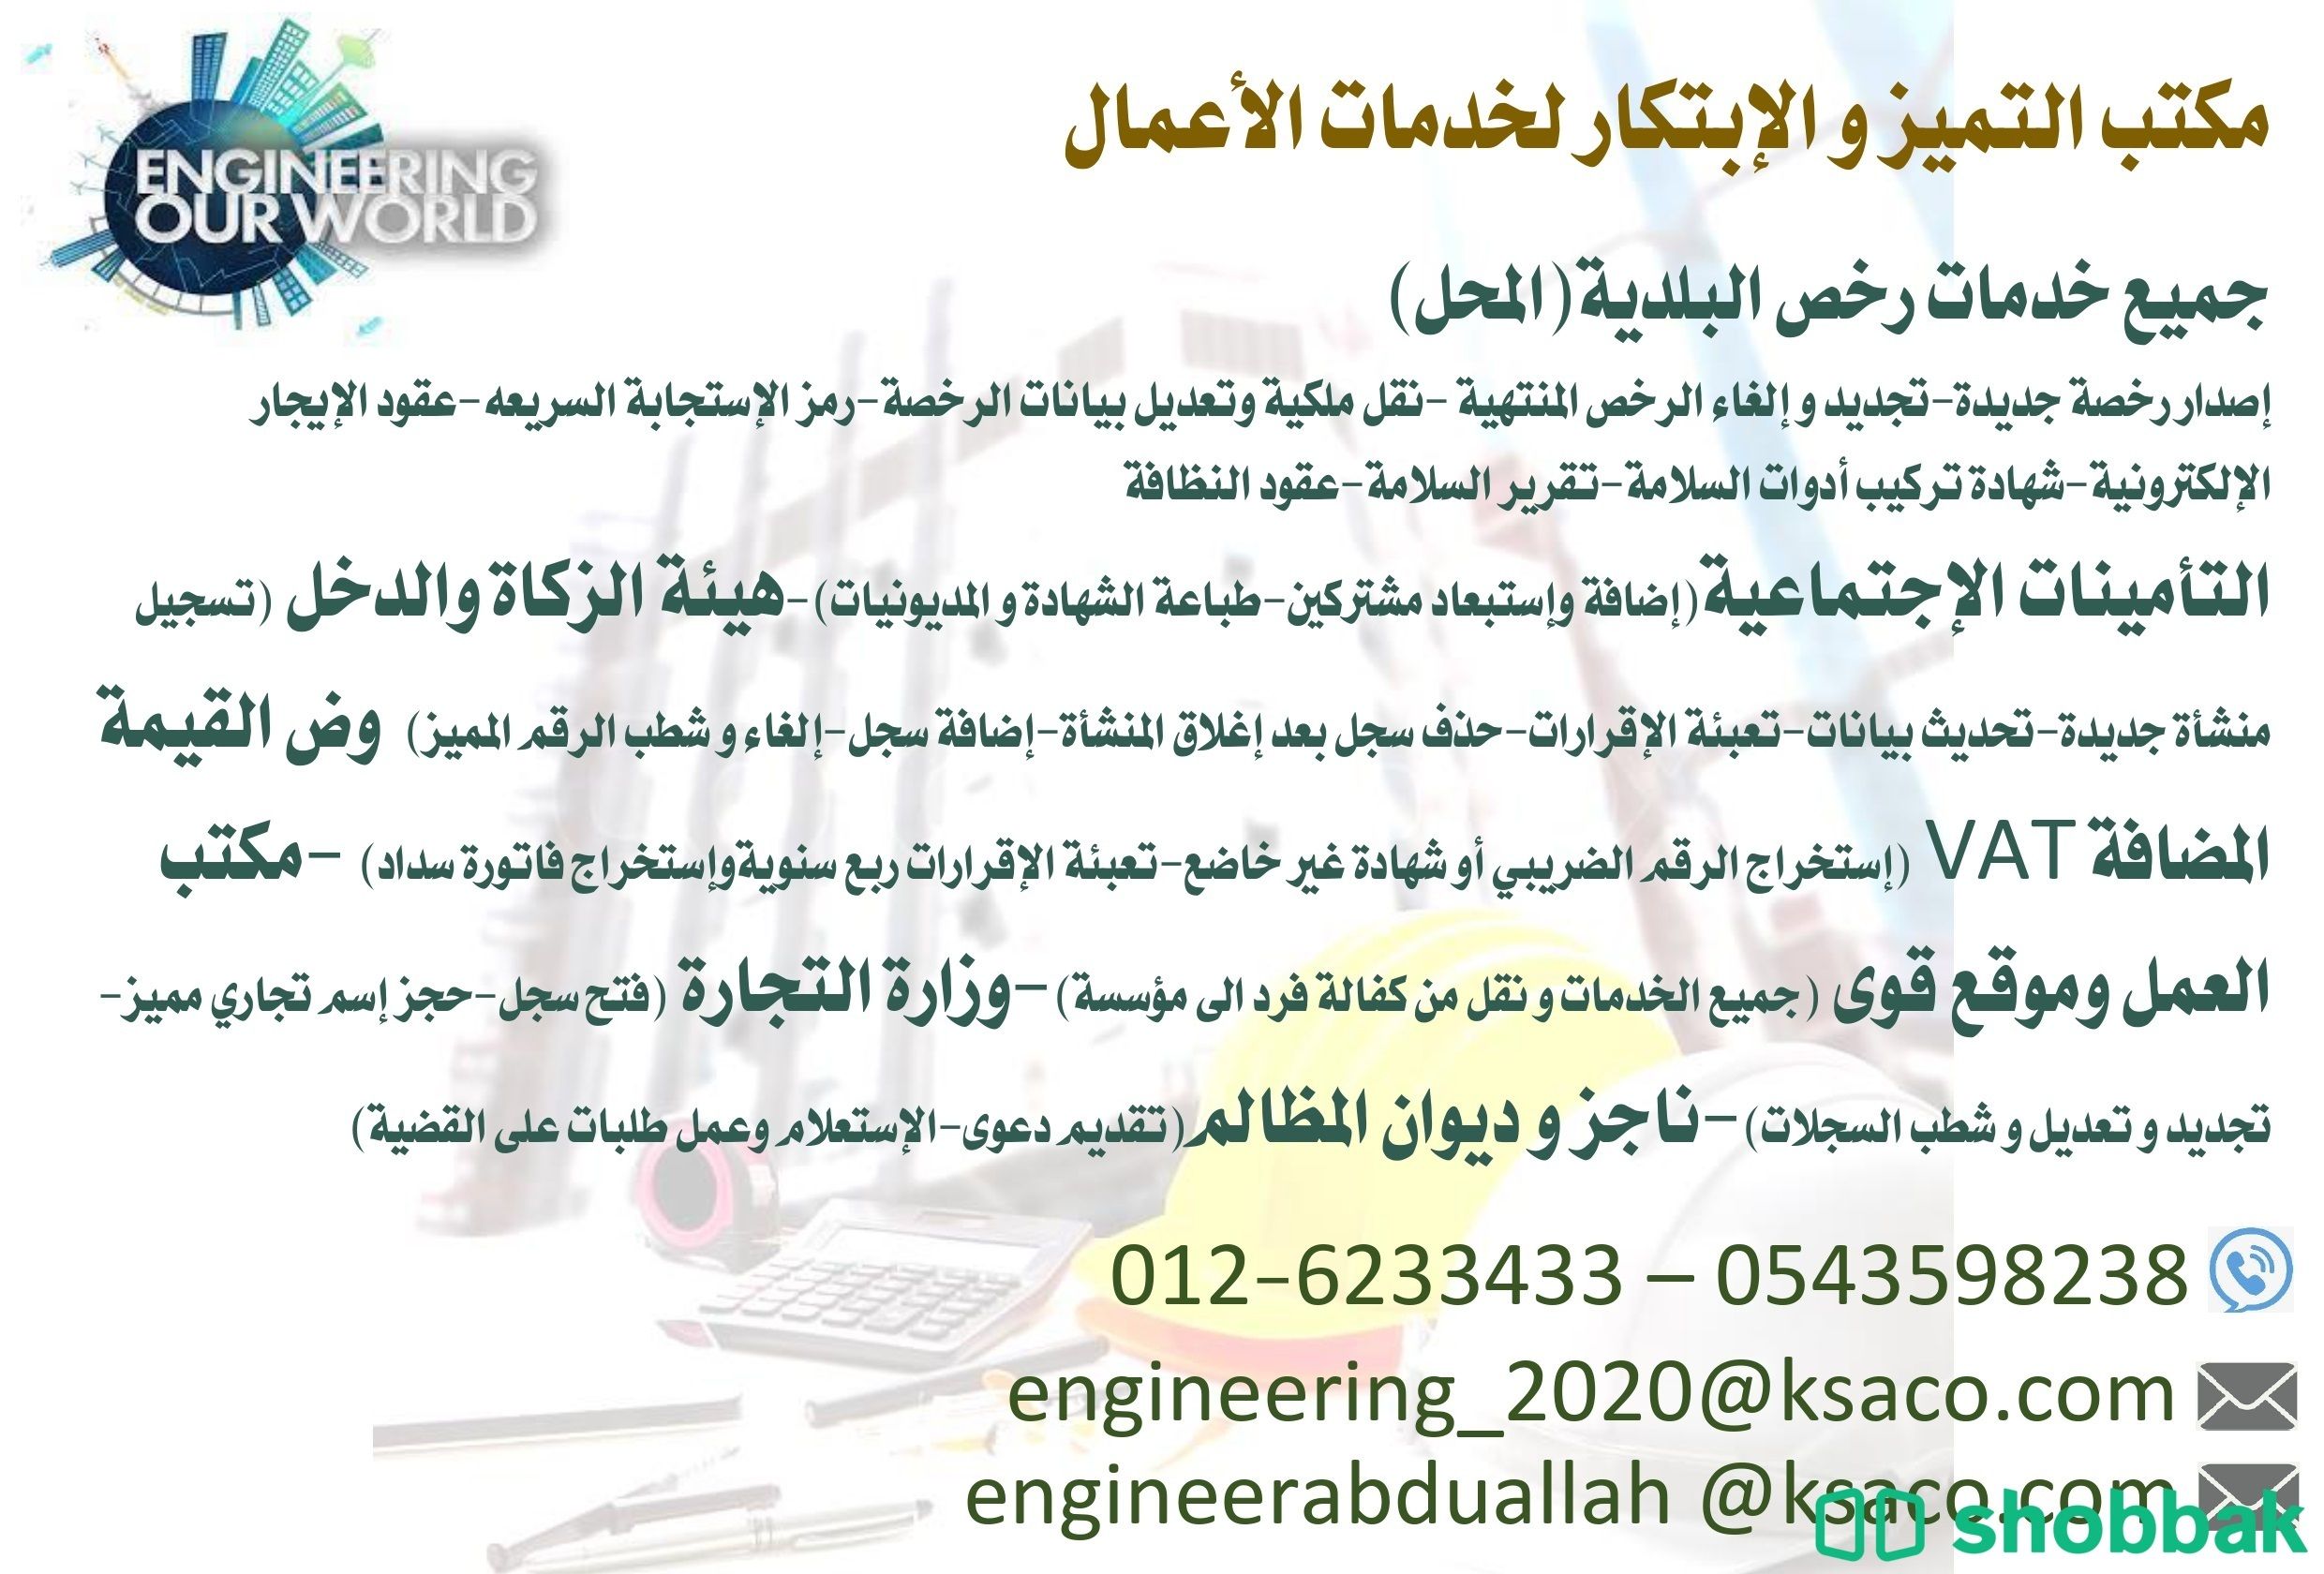 خدمات ادارة المؤسسات وخدمات رجال الاعمال Shobbak Saudi Arabia